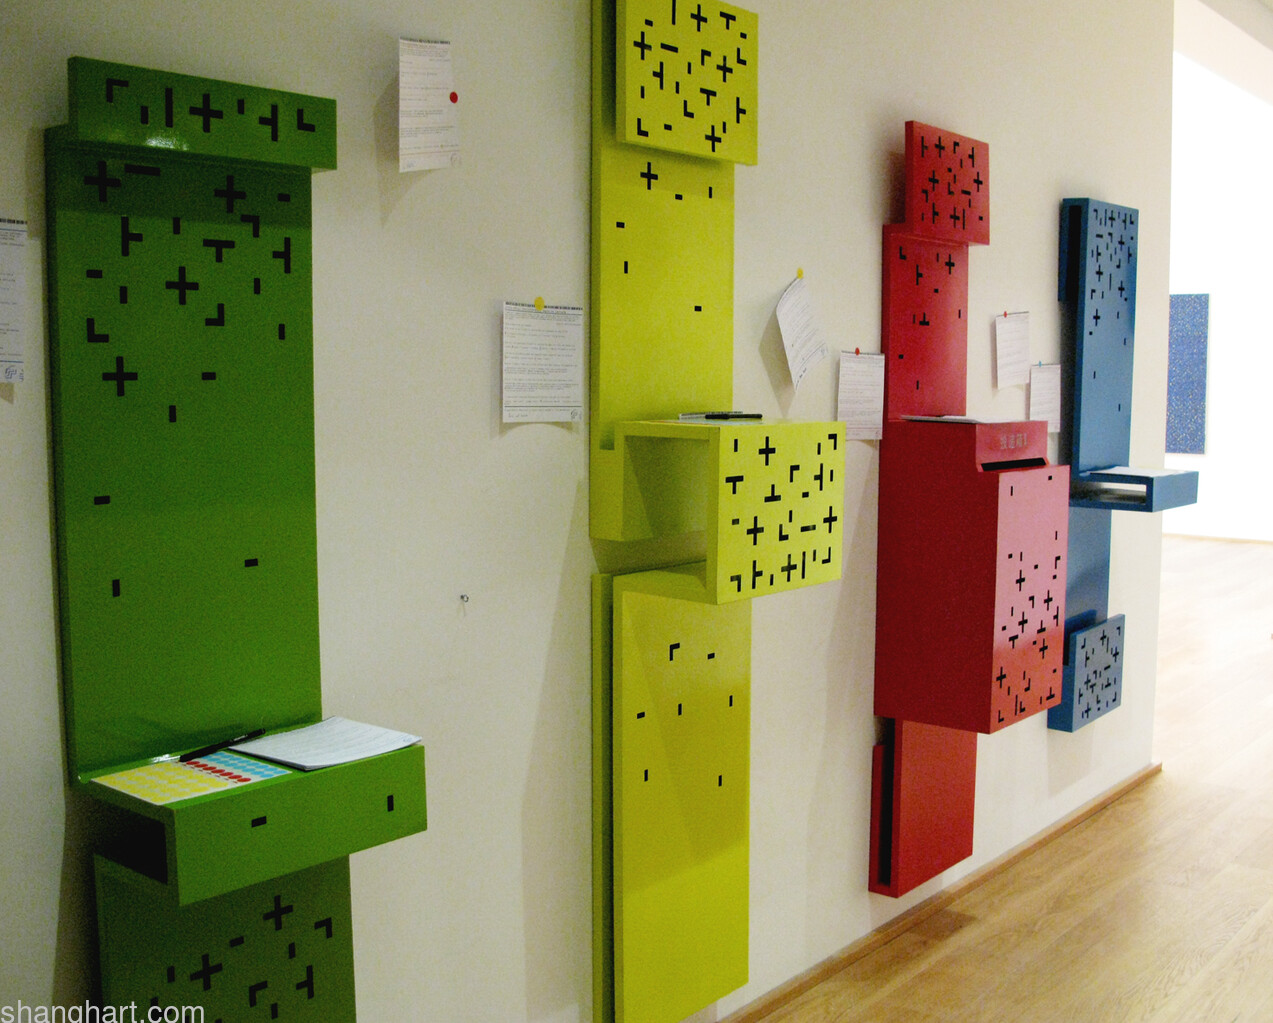 展览场景——装置作品,信箱，2006